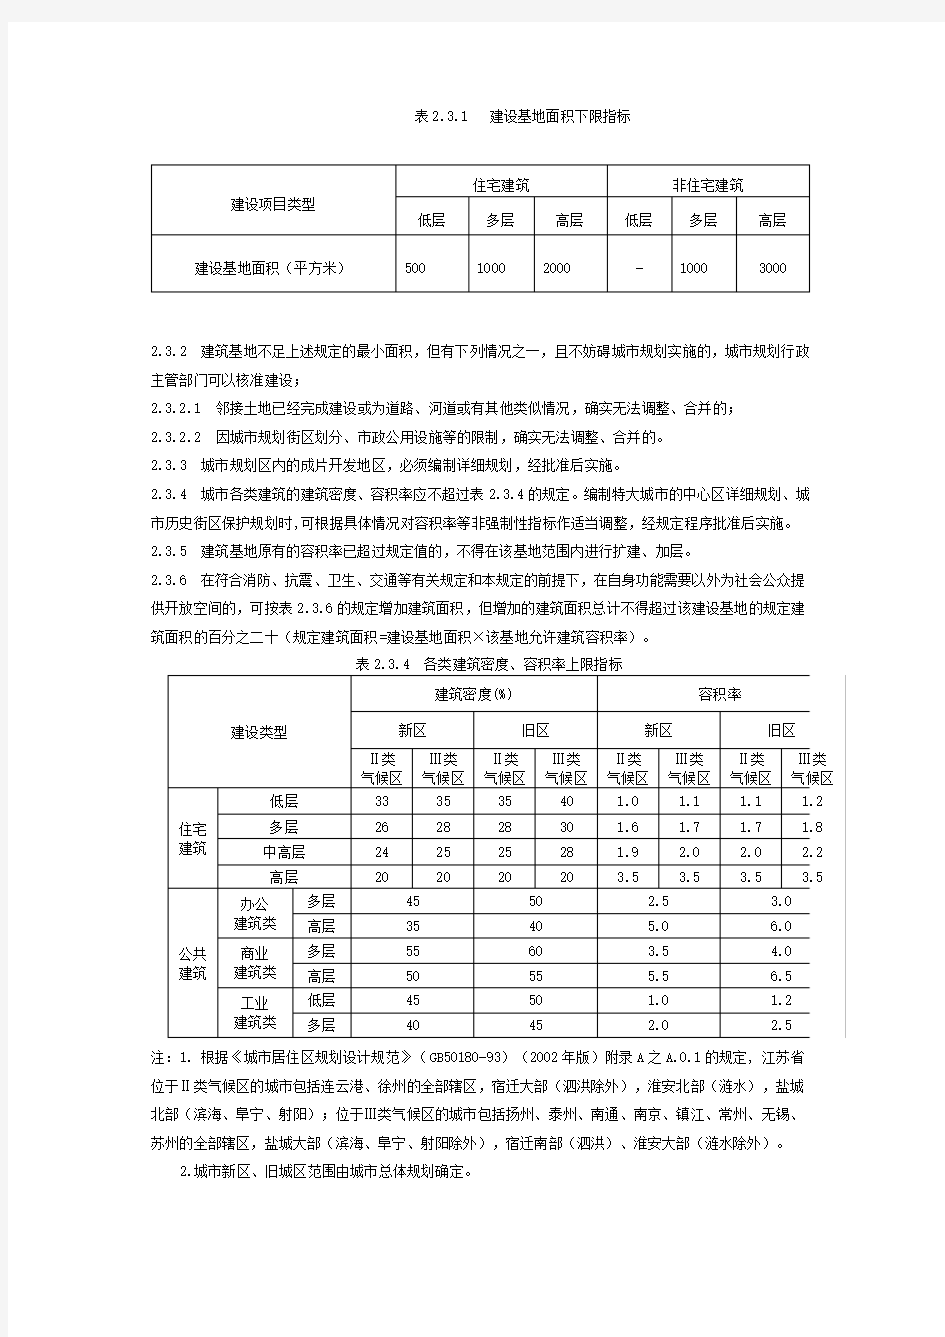 江苏省城市规划管理技术规定(完整版带图示)